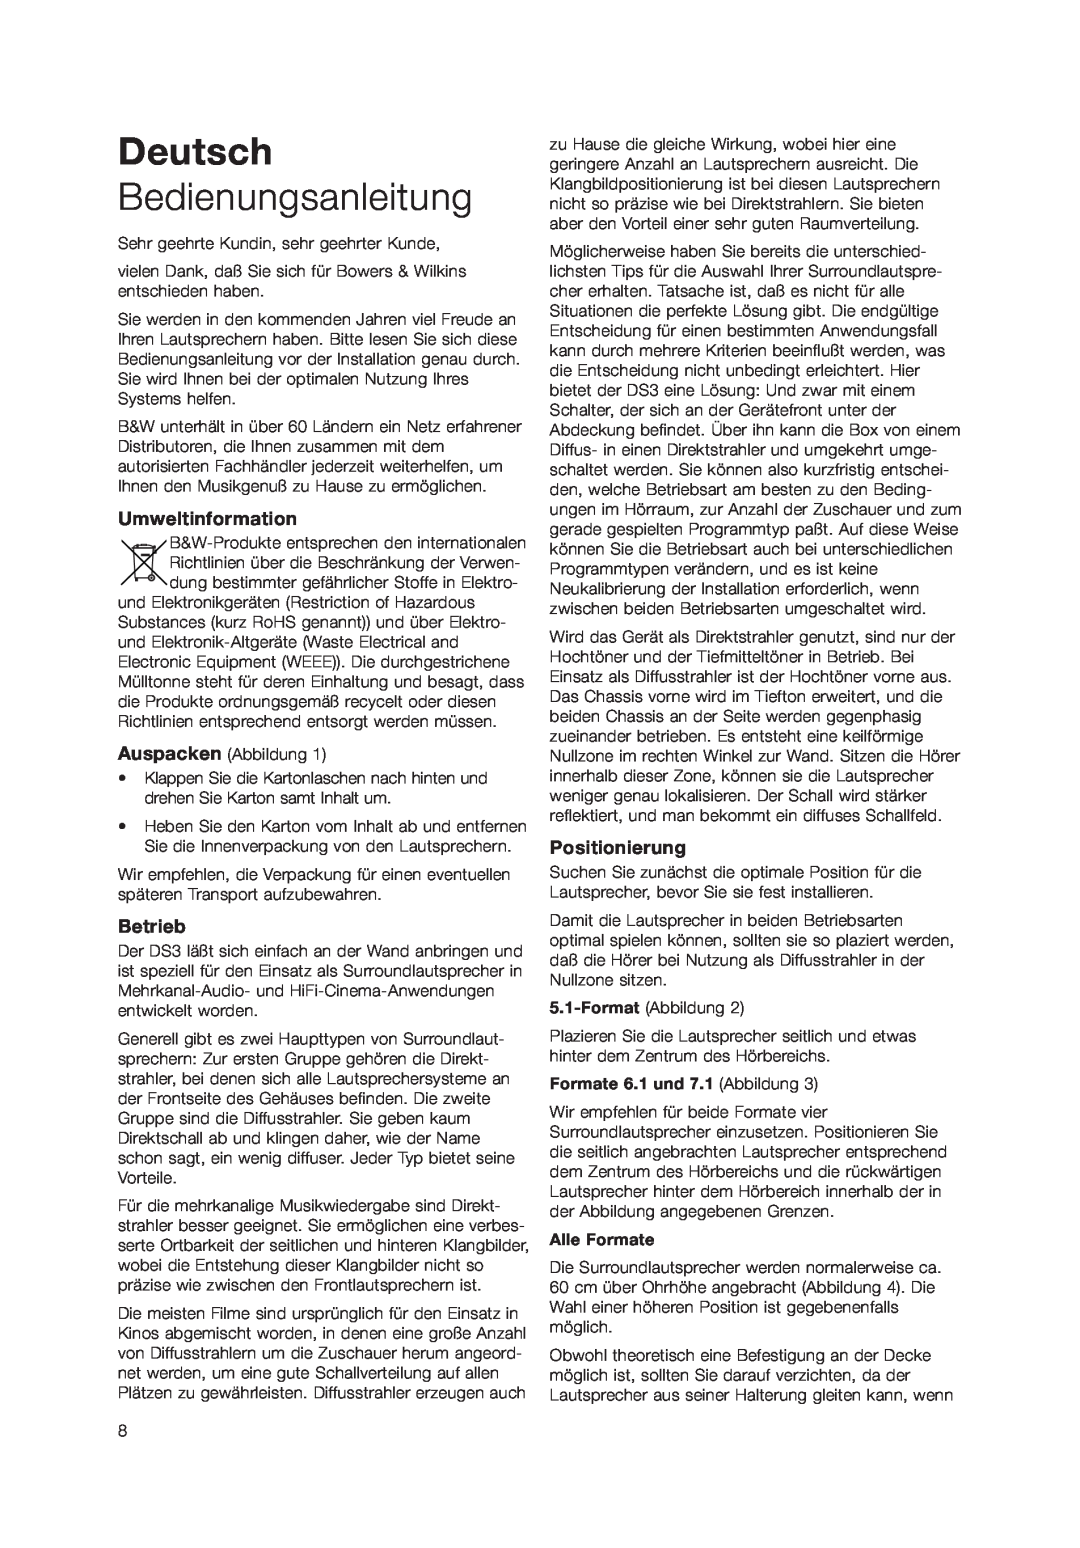 Bowers & Wilkins DS3 owner manual Deutsch, Bedienungsanleitung, Umweltinformation, Betrieb, Positionierung 